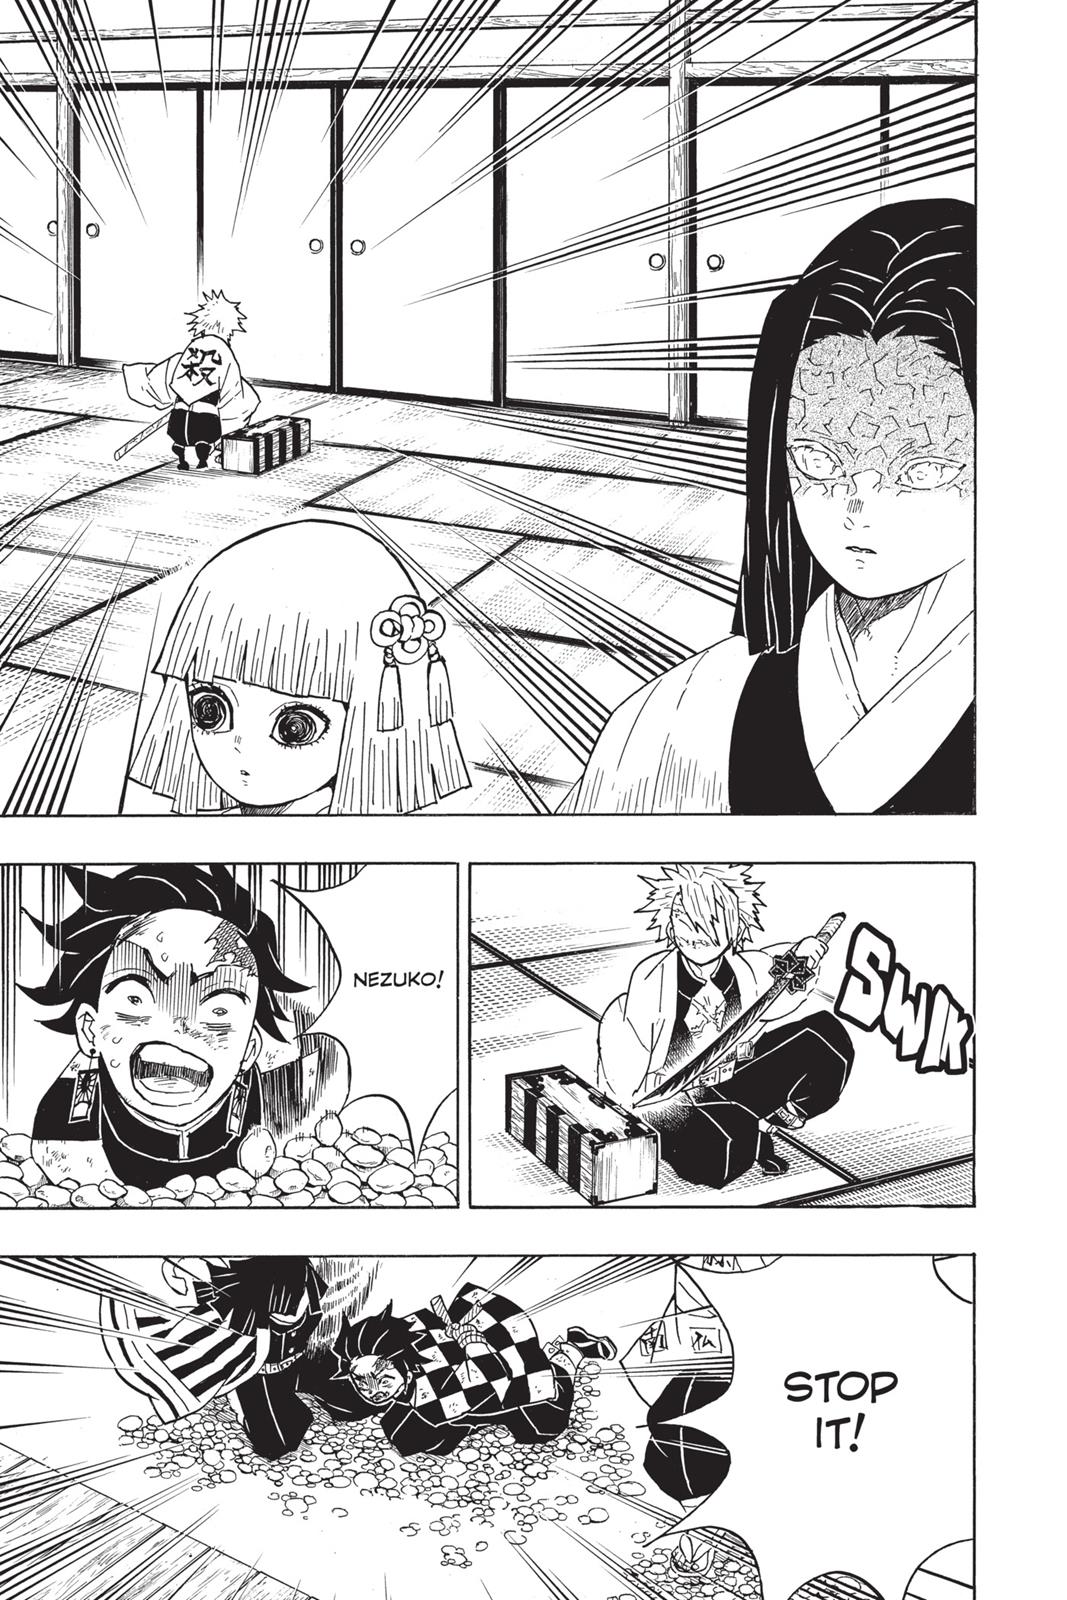 Demon Slayer Manga Manga Chapter - 47 - image 2